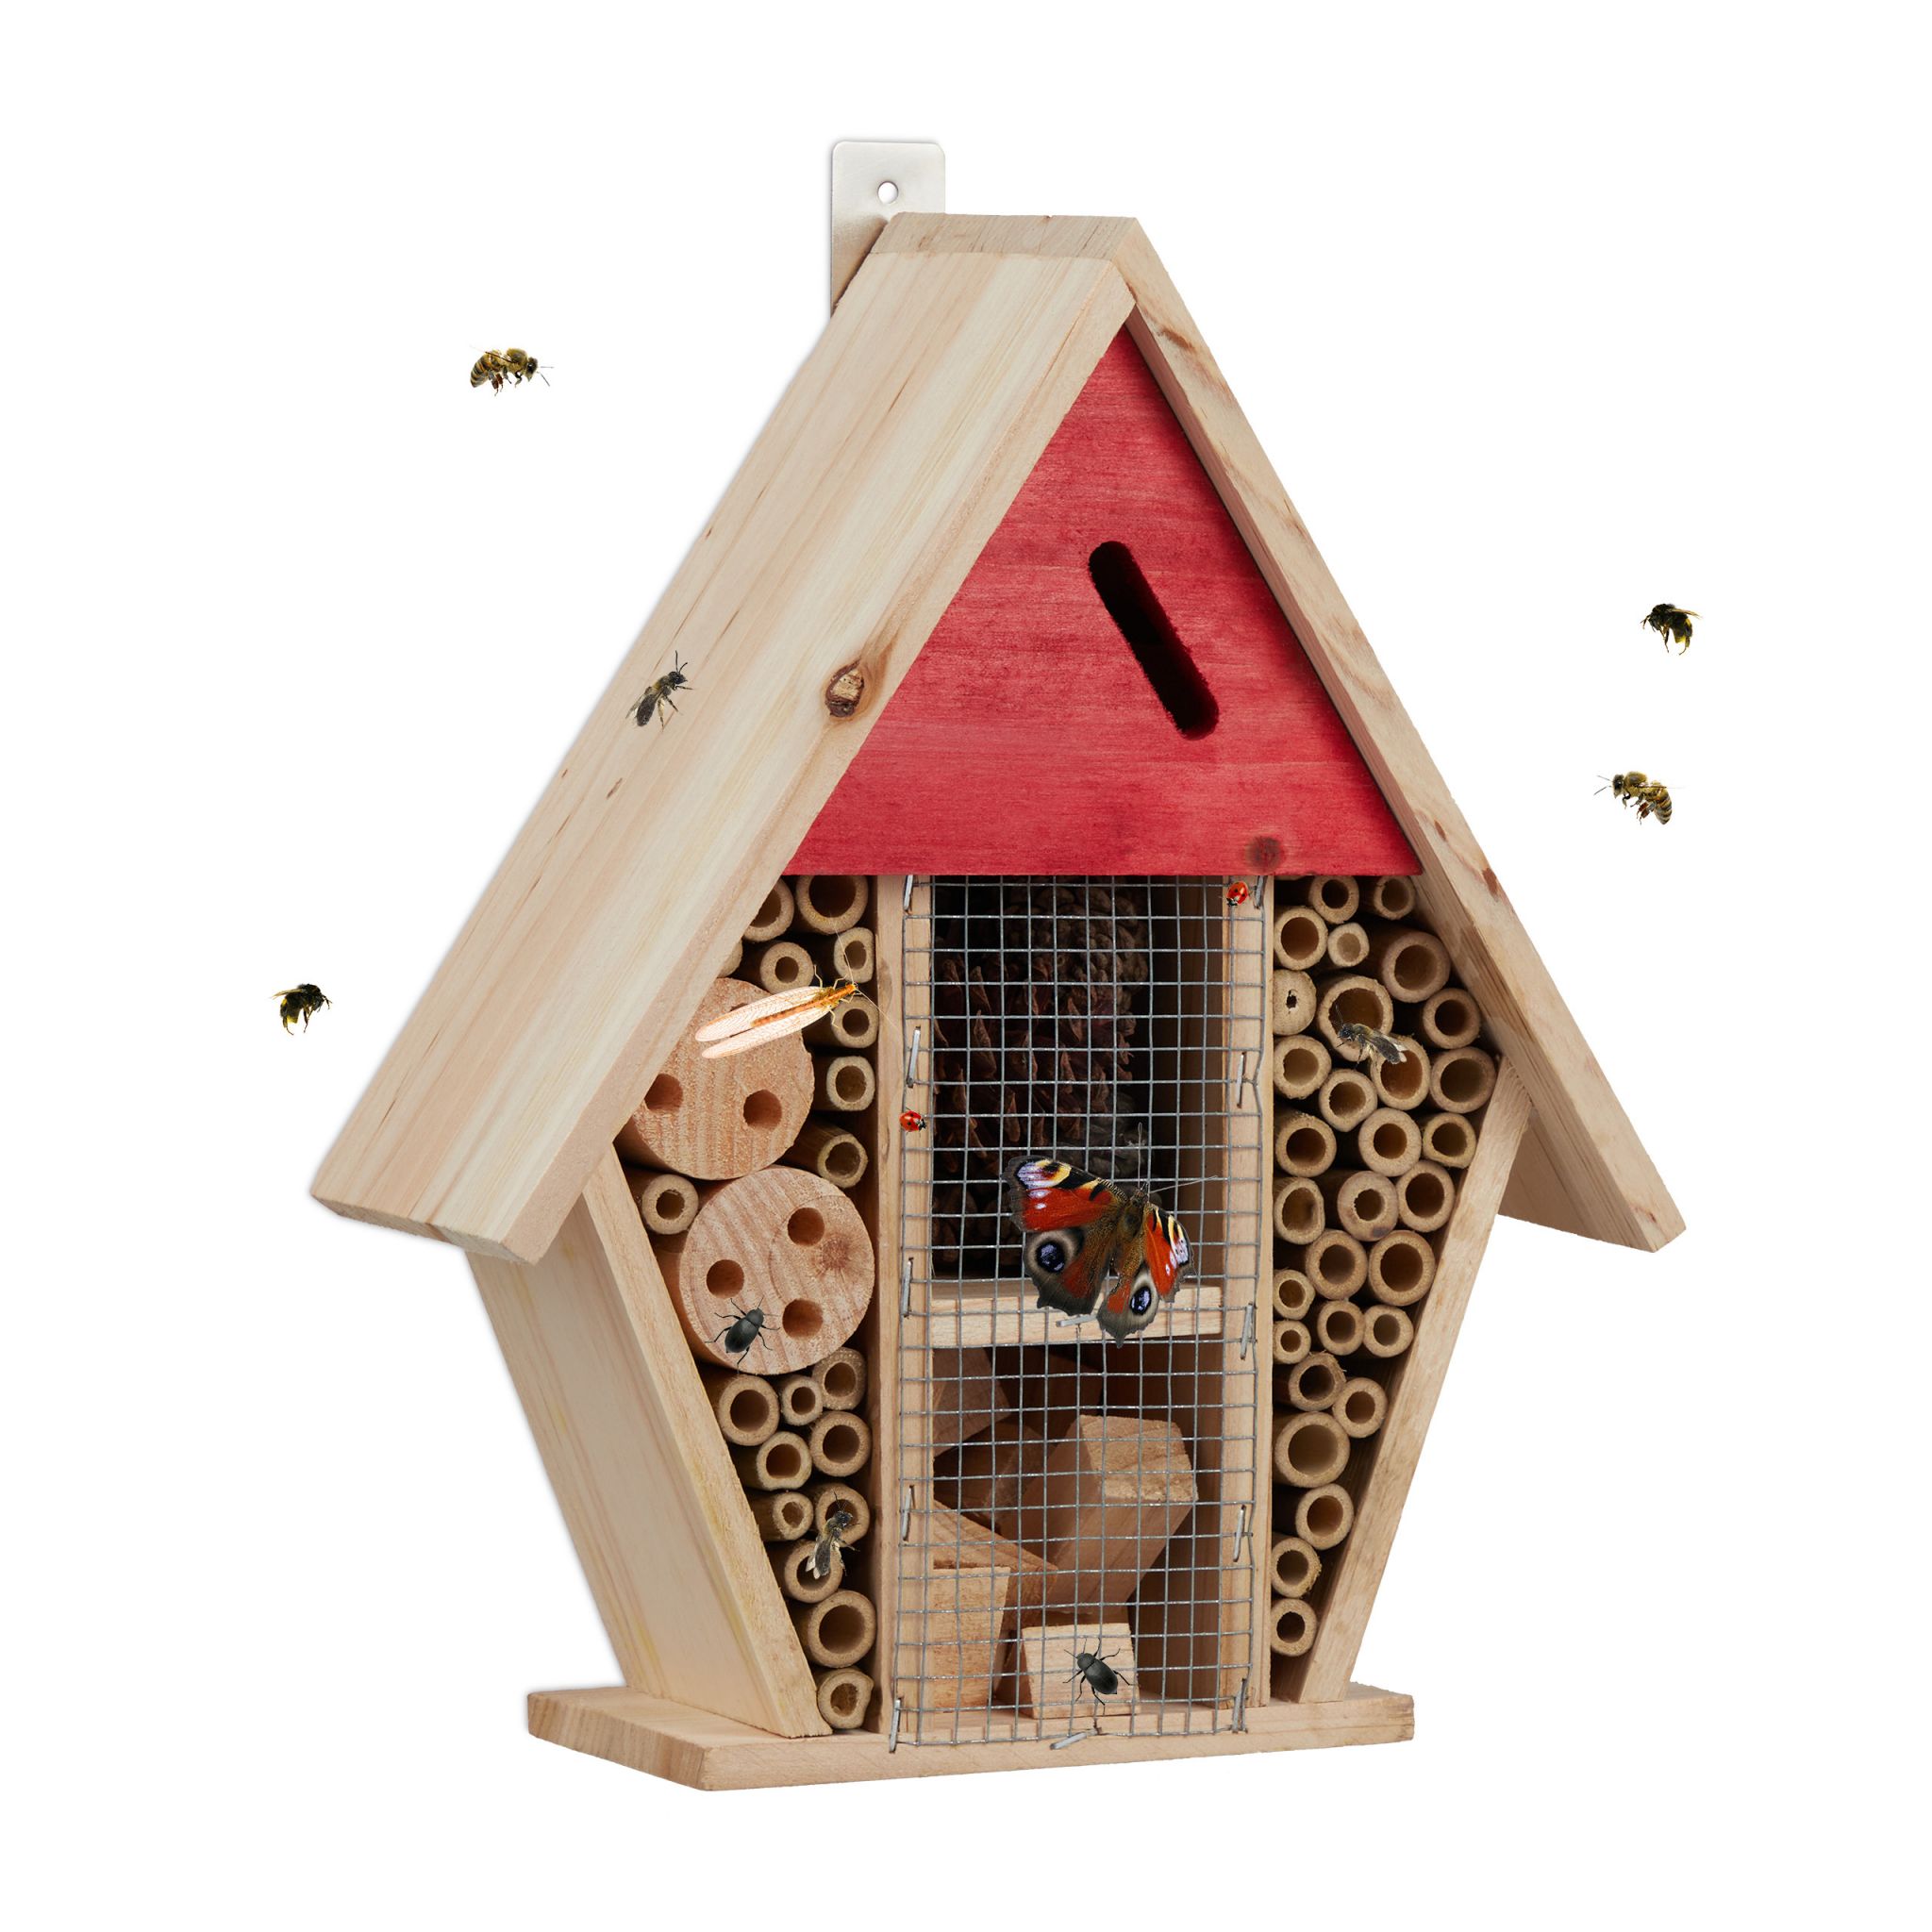 E-shop Hmyzí domček pre včely a iný hmyz, RD31026